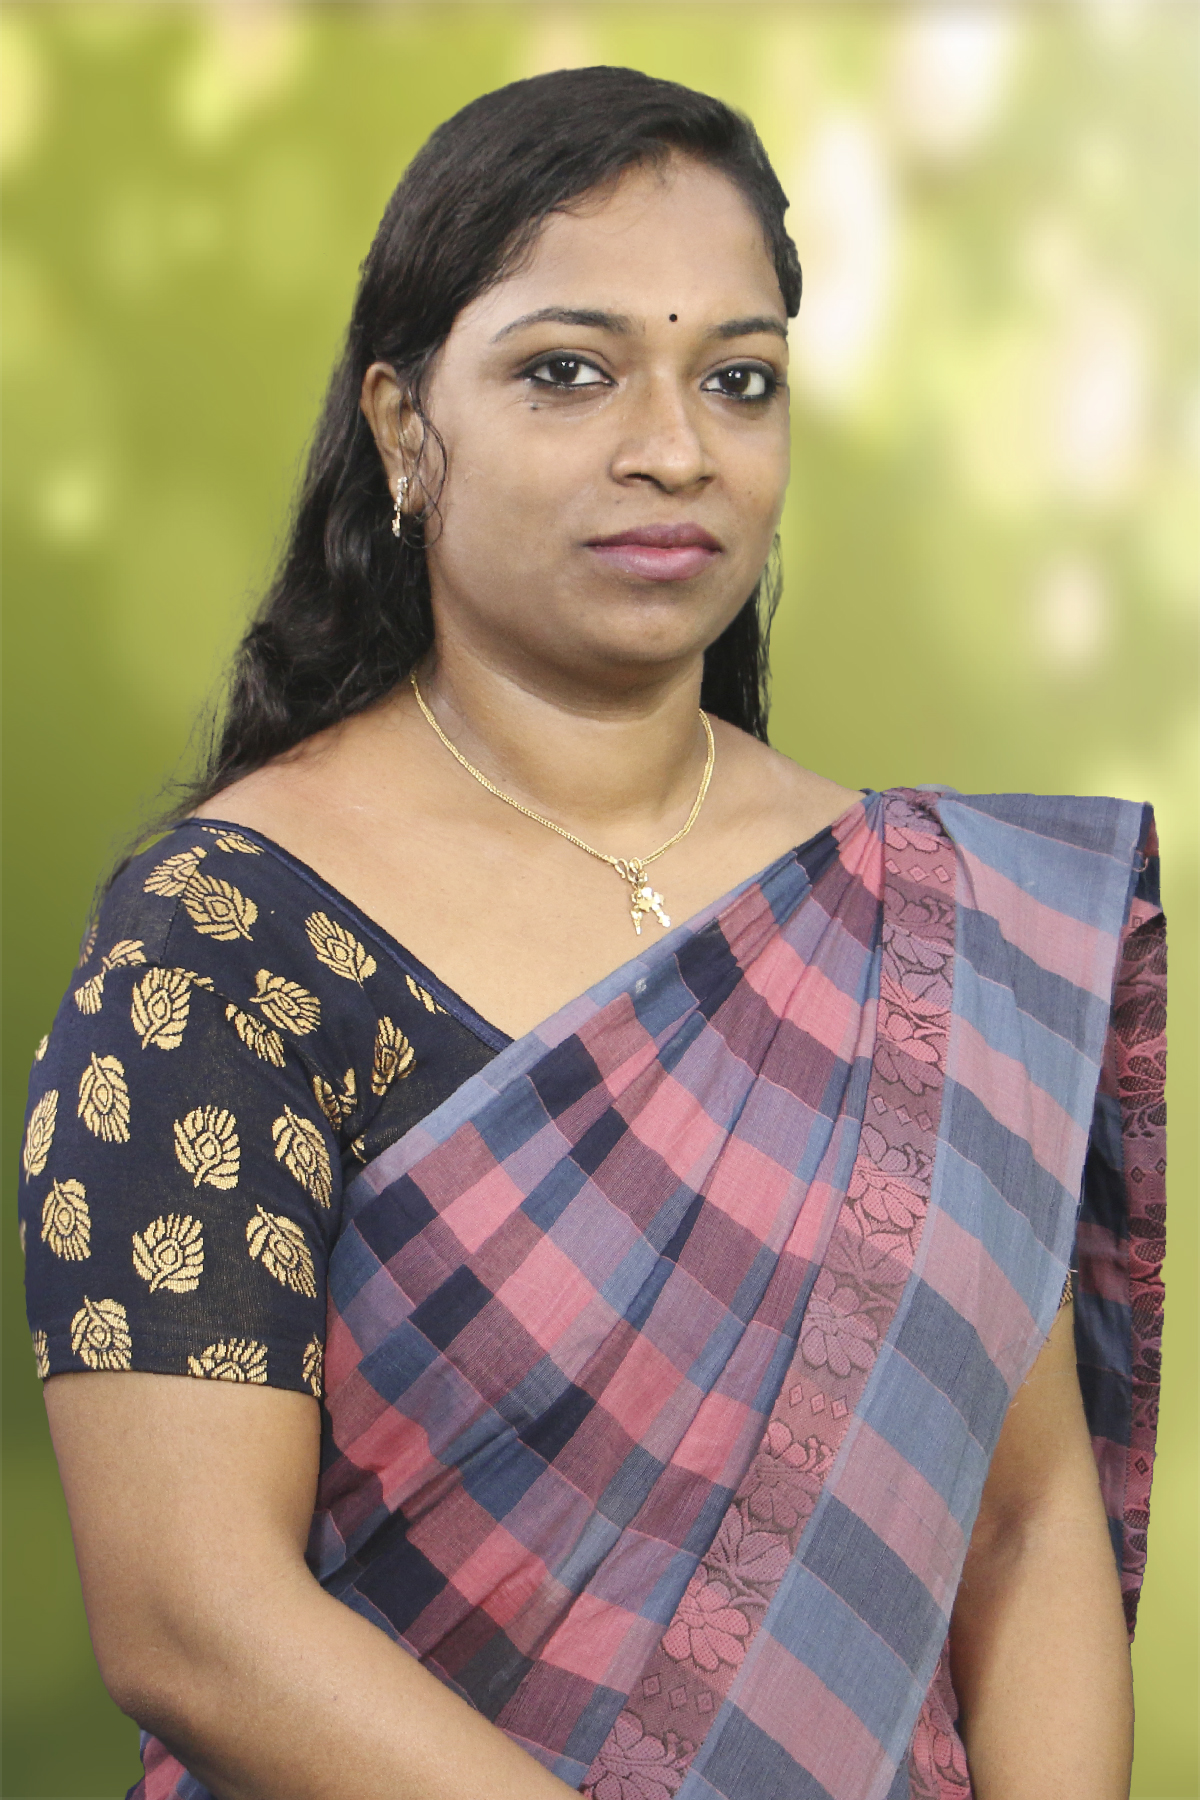 Ms. Jain Rajan